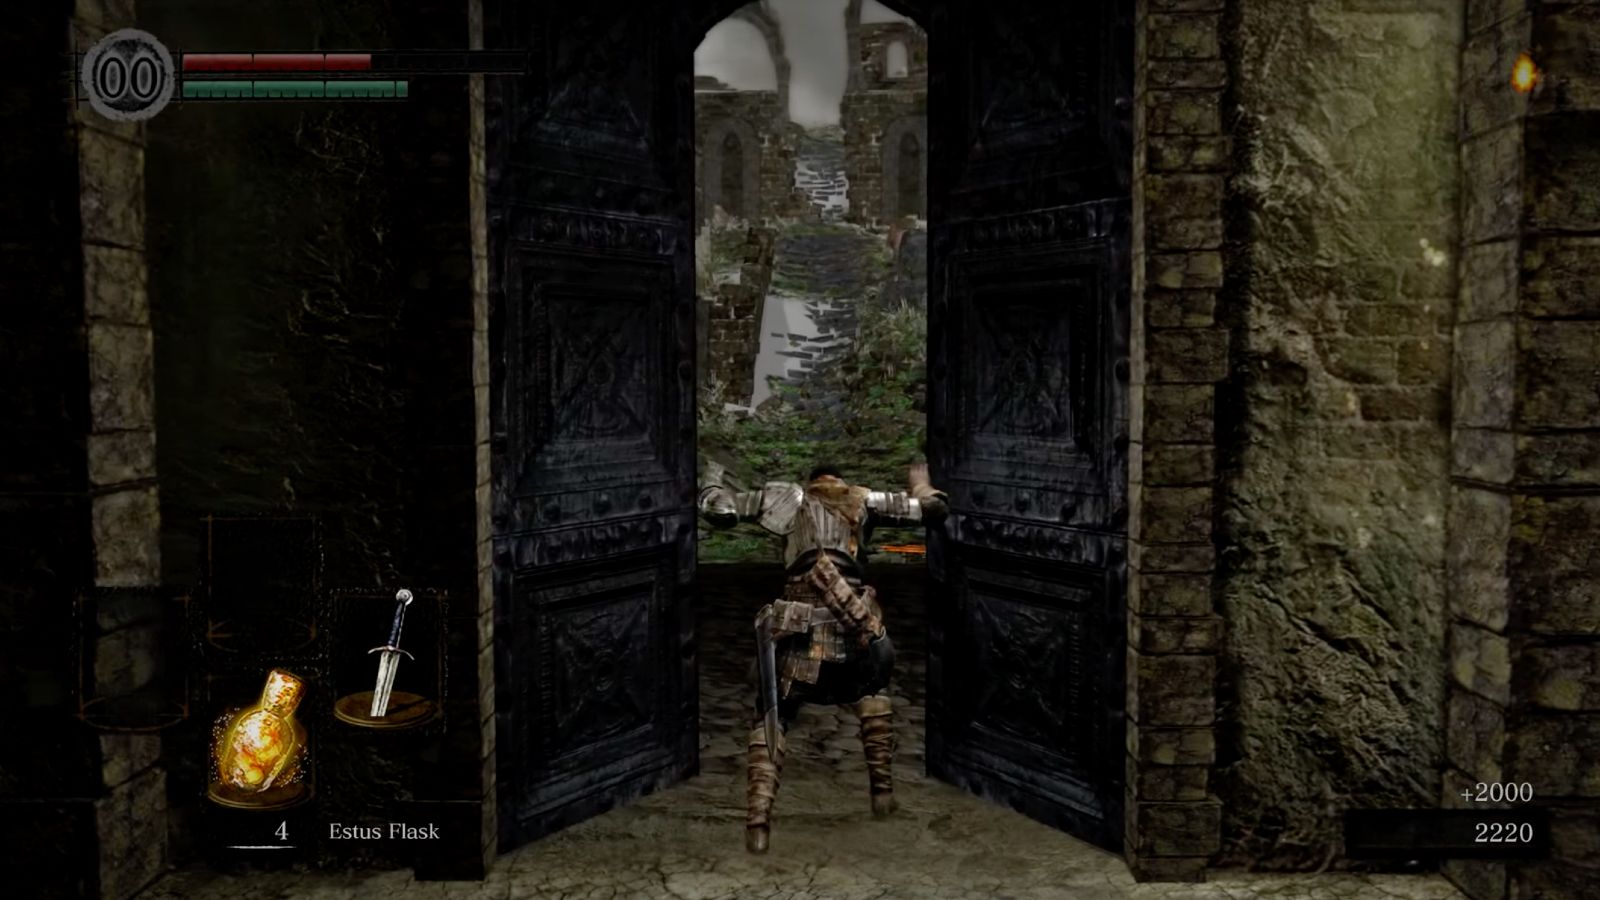 The door after defeating the Asylum Demon in Dark Souls